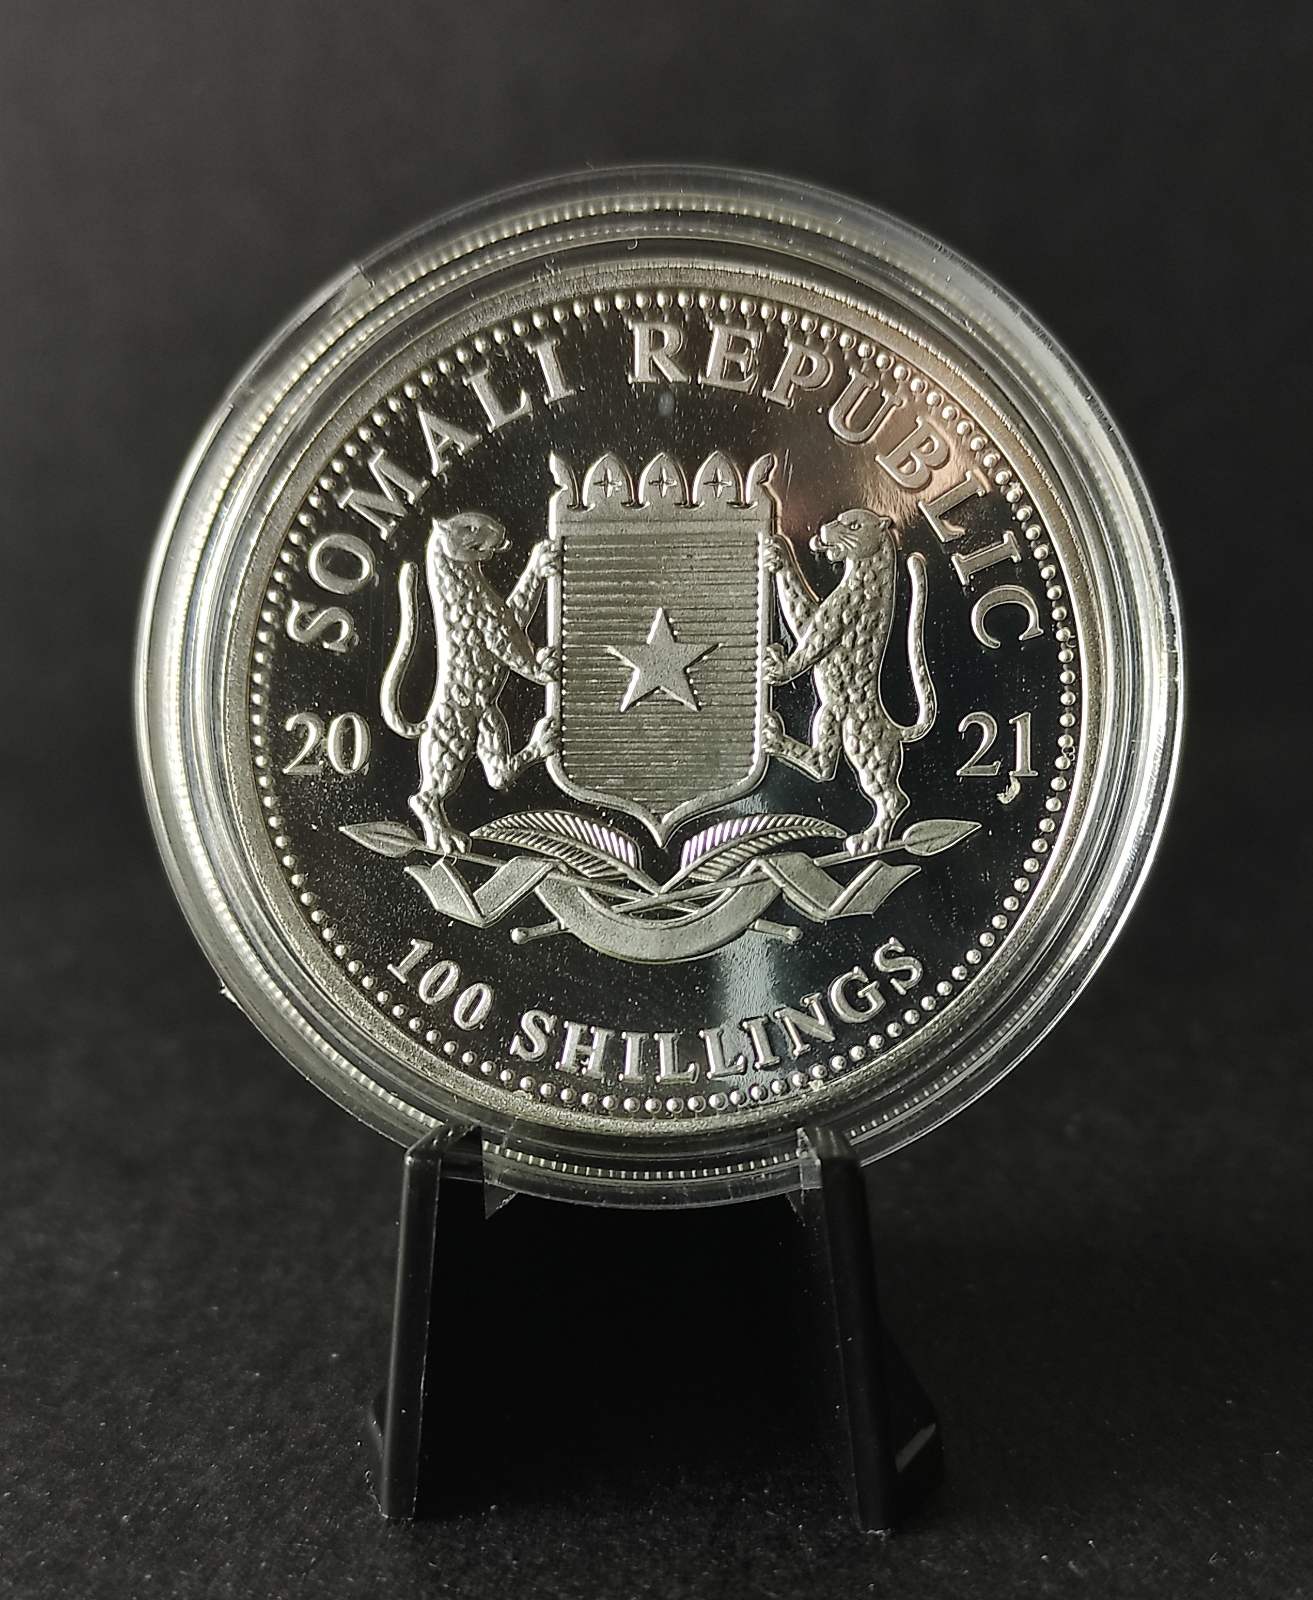 2021 Somalia Elephant 1 oz Silver Coin BU in Capsule